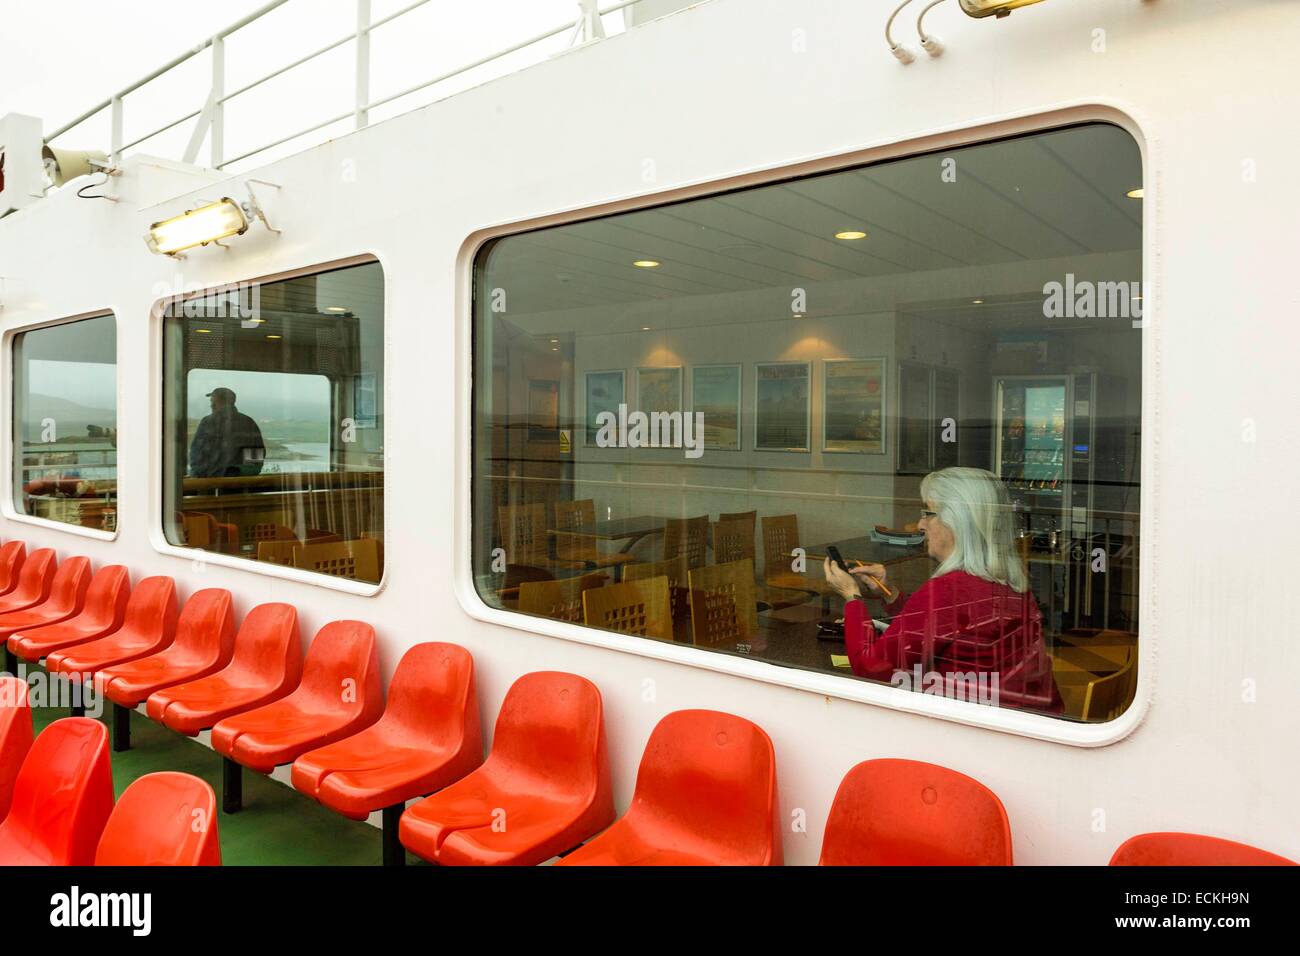 Royaume-uni, Ecosse, îles Hébrides, Leverburgh, South Harris, un transport par bateau, ferry, à l'intérieur d'un ferry sur un hublot Banque D'Images